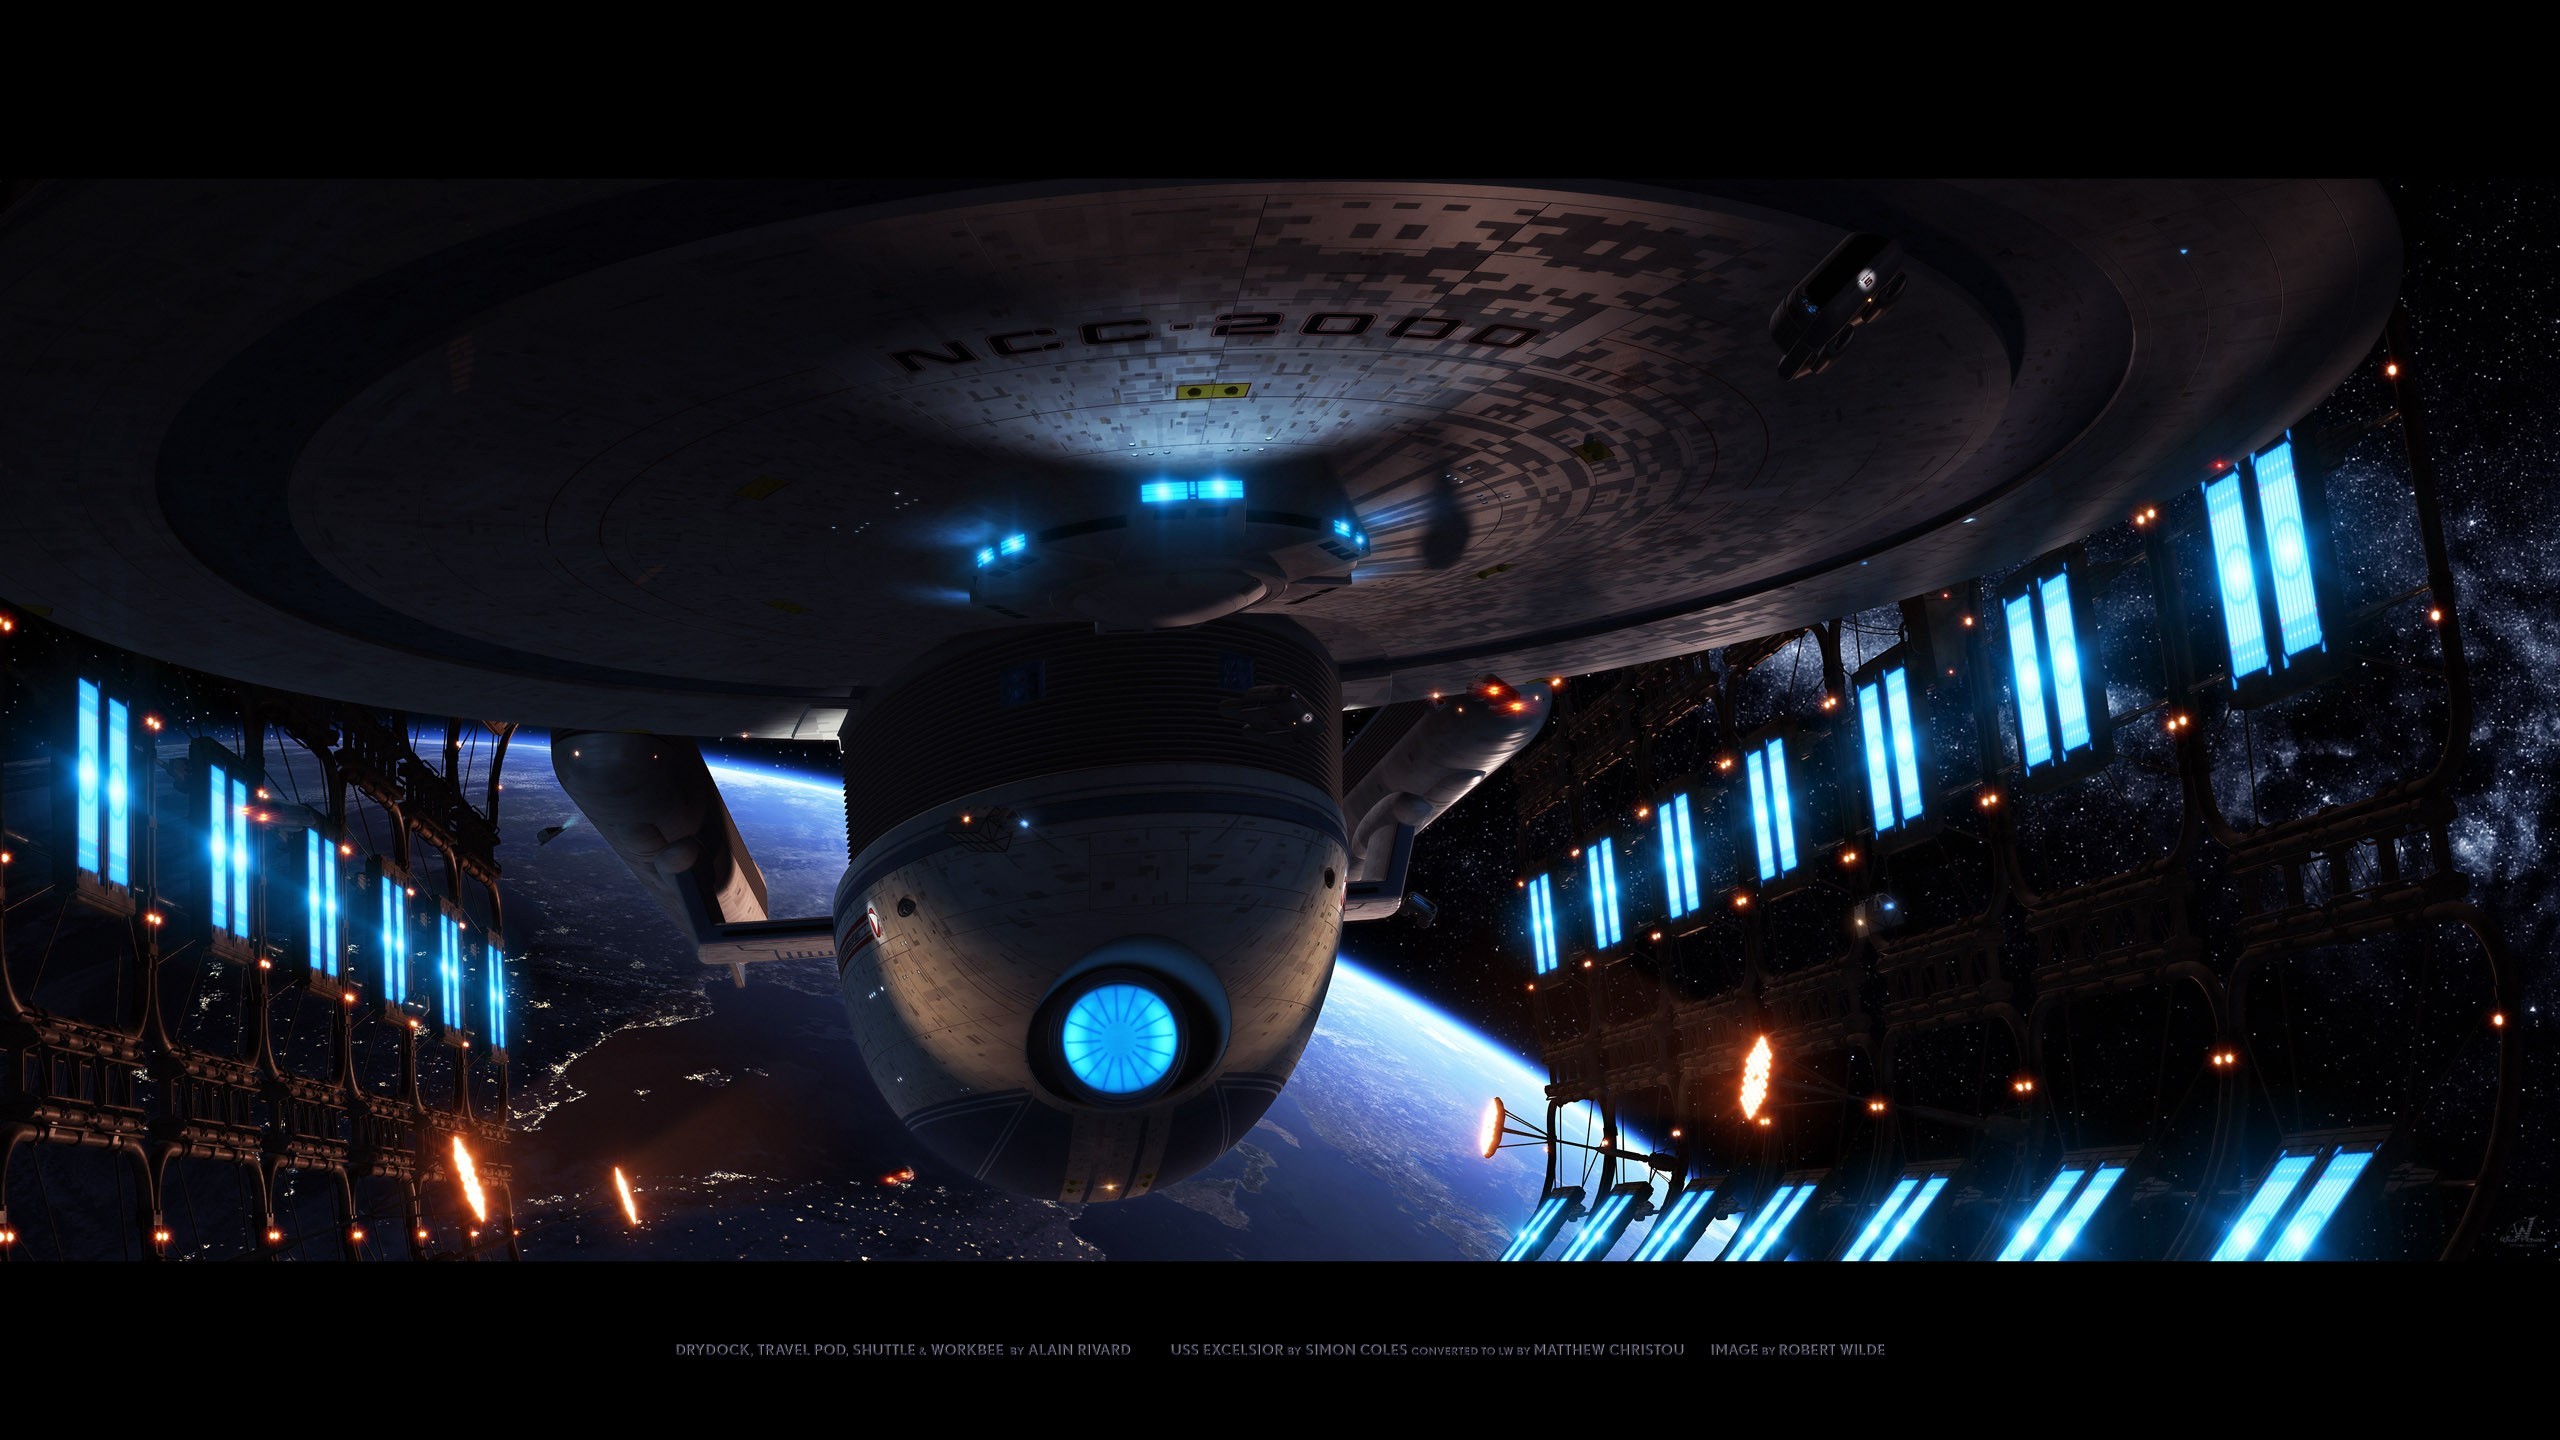 2560x1440 Star Trek Wallpaper  Star, Trek, Enterprise, Uss, Excelsior